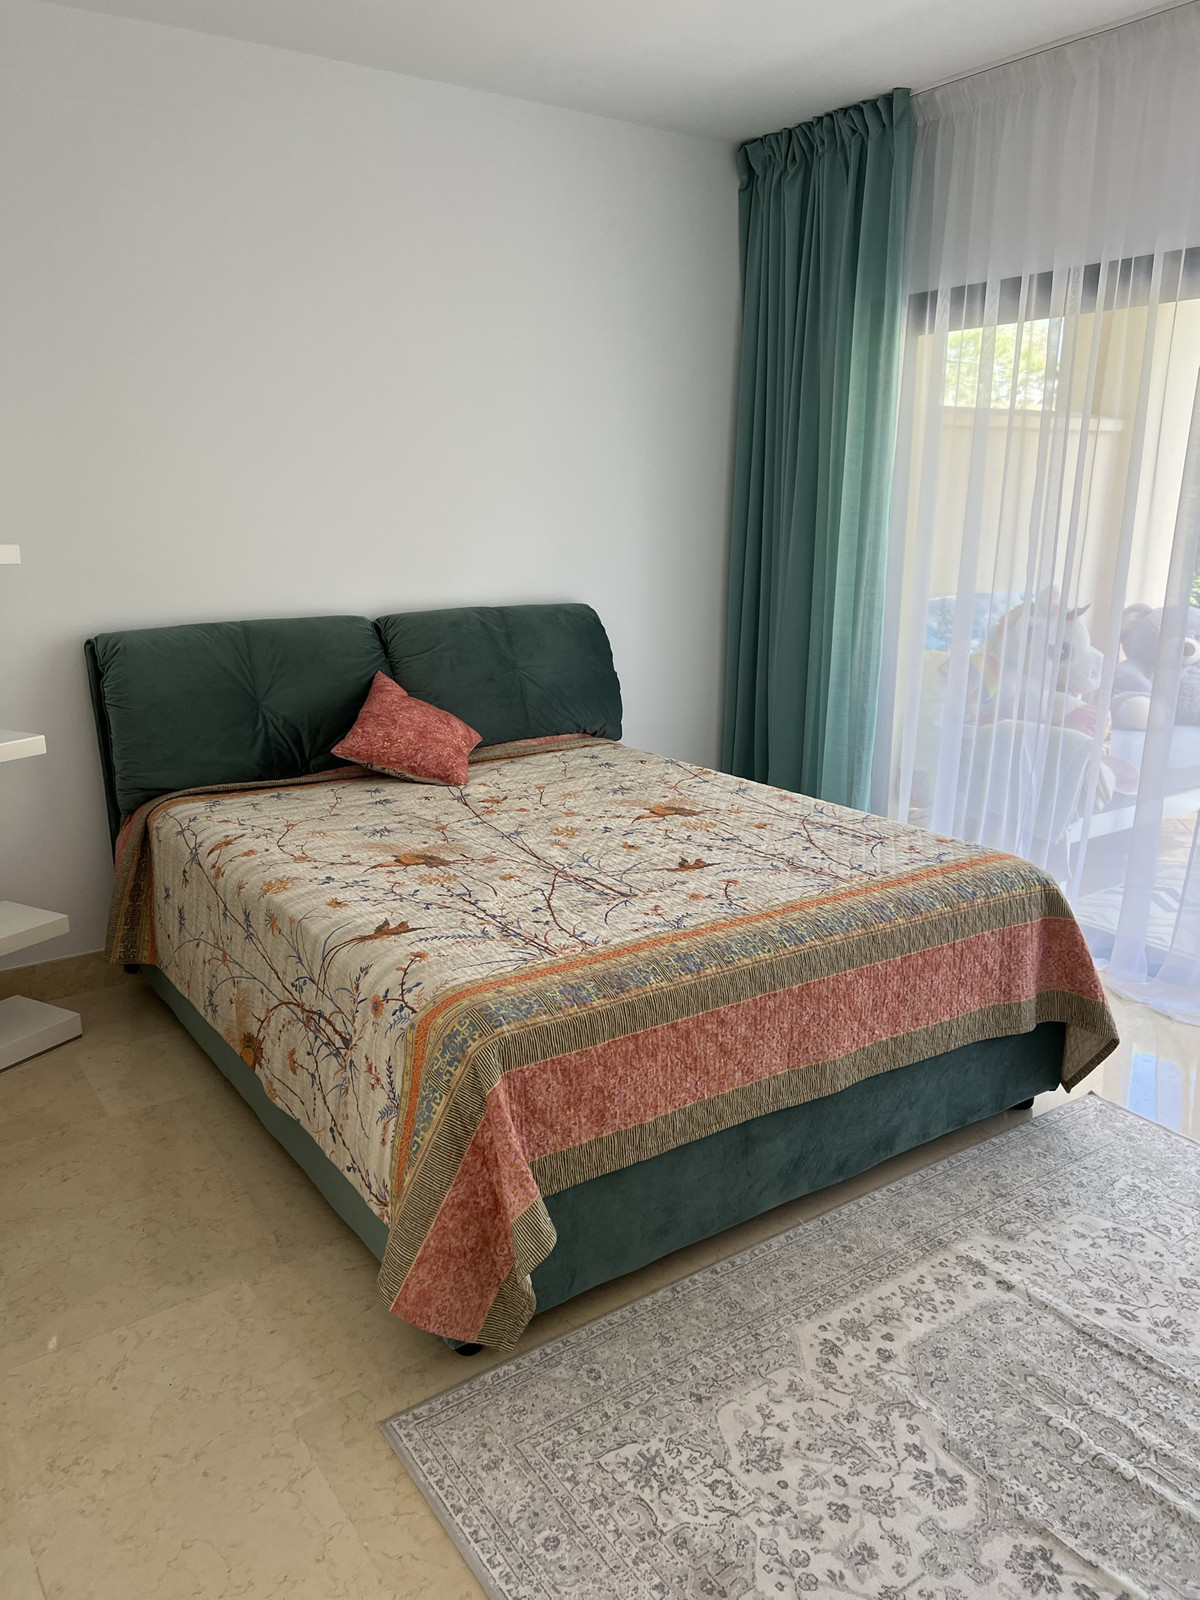 4 bed Property For Sale in Benahavis, Costa del Sol - thumb 10